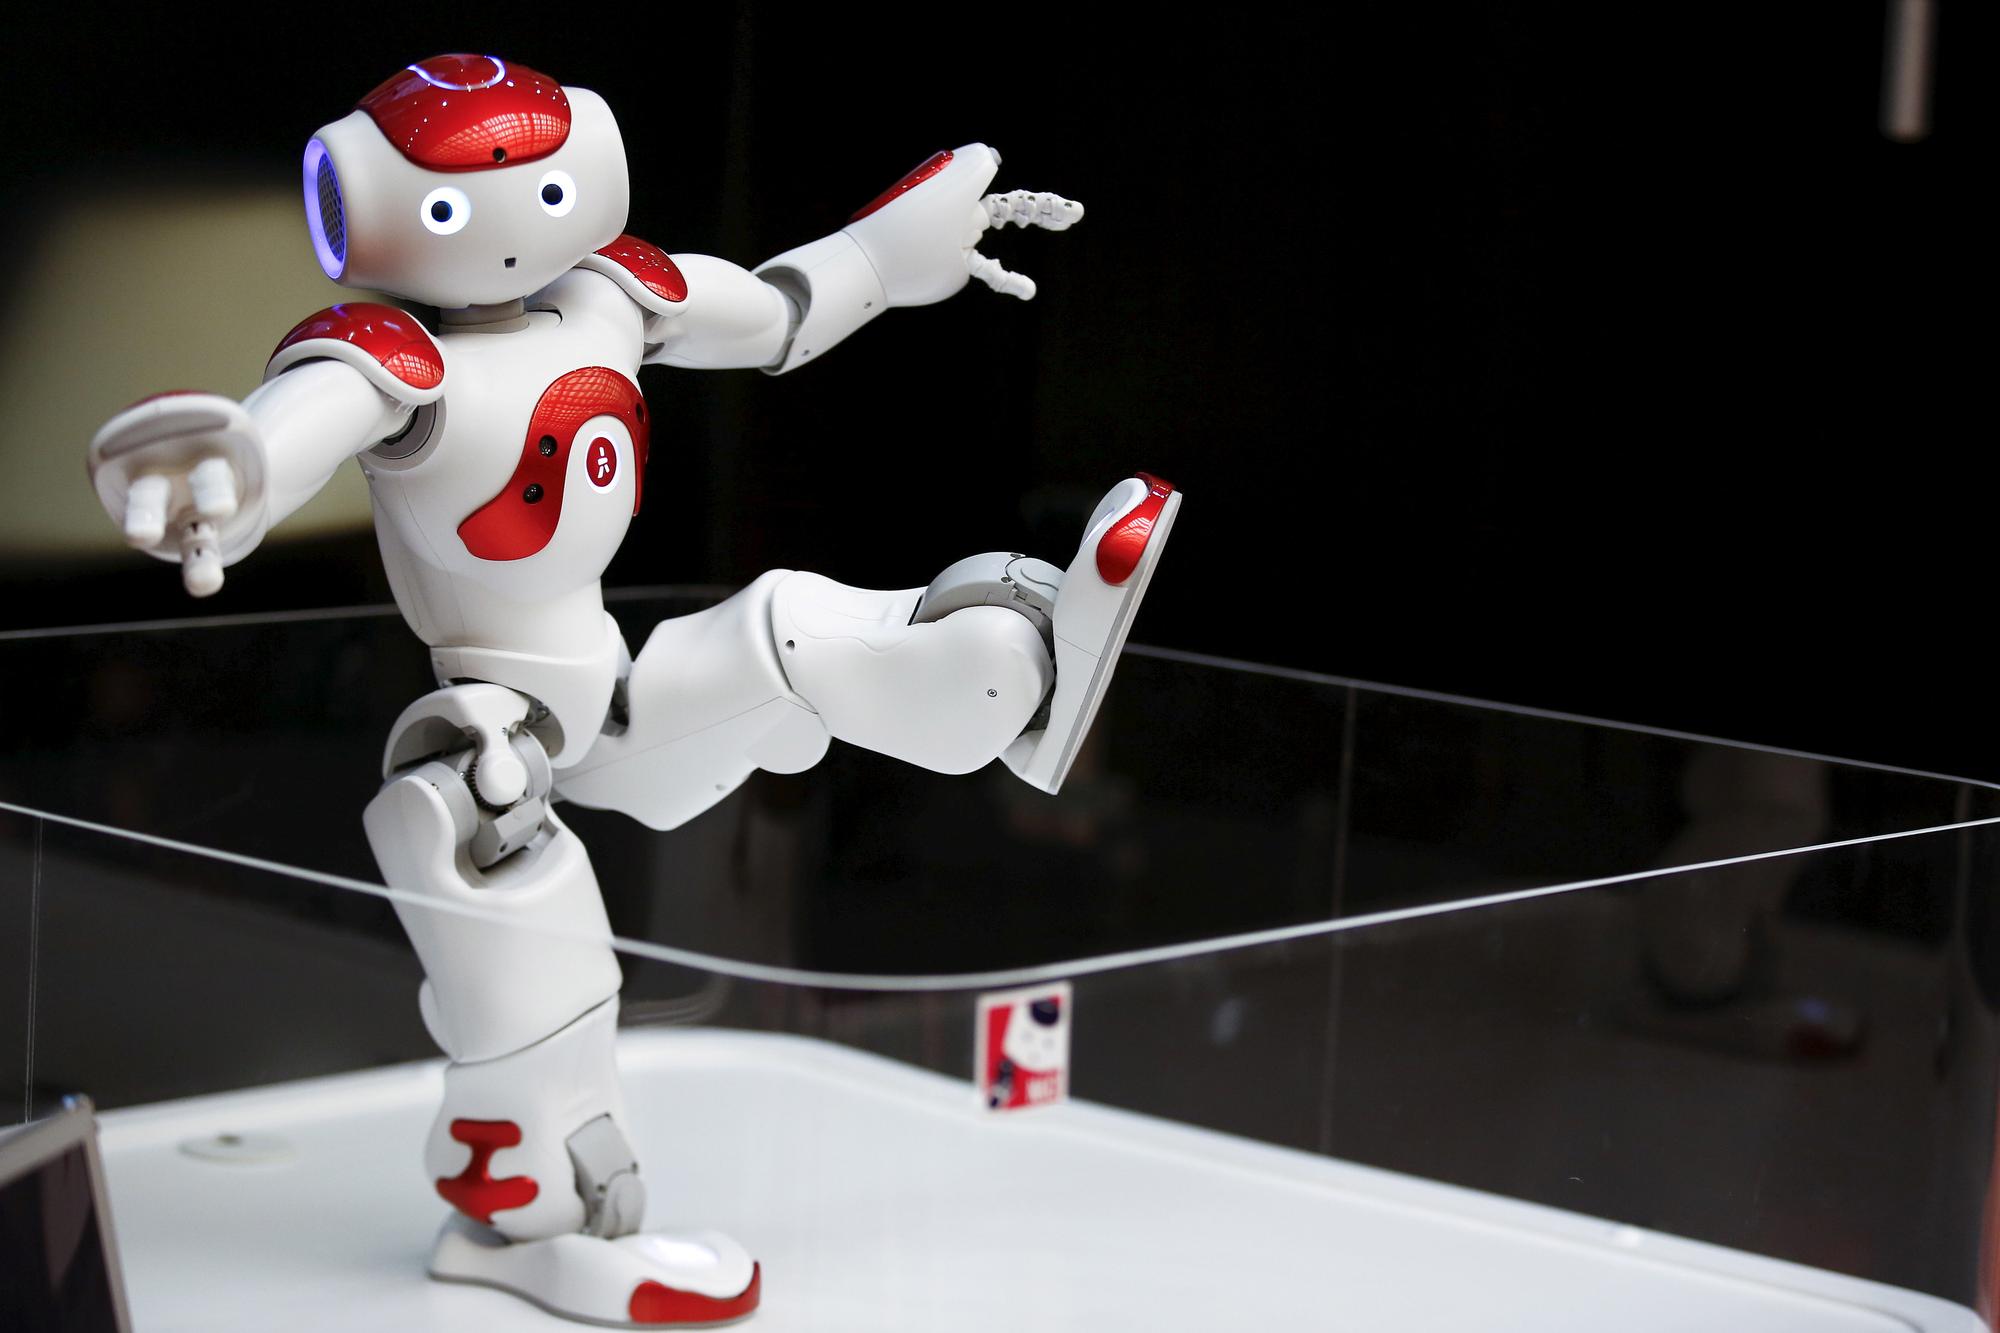 Le robot "Nao" peut danser et proposer des exercices physiques aux résidents de l'EMS de la Fondation Primeroche. [REUTERS - Thomas Peter]